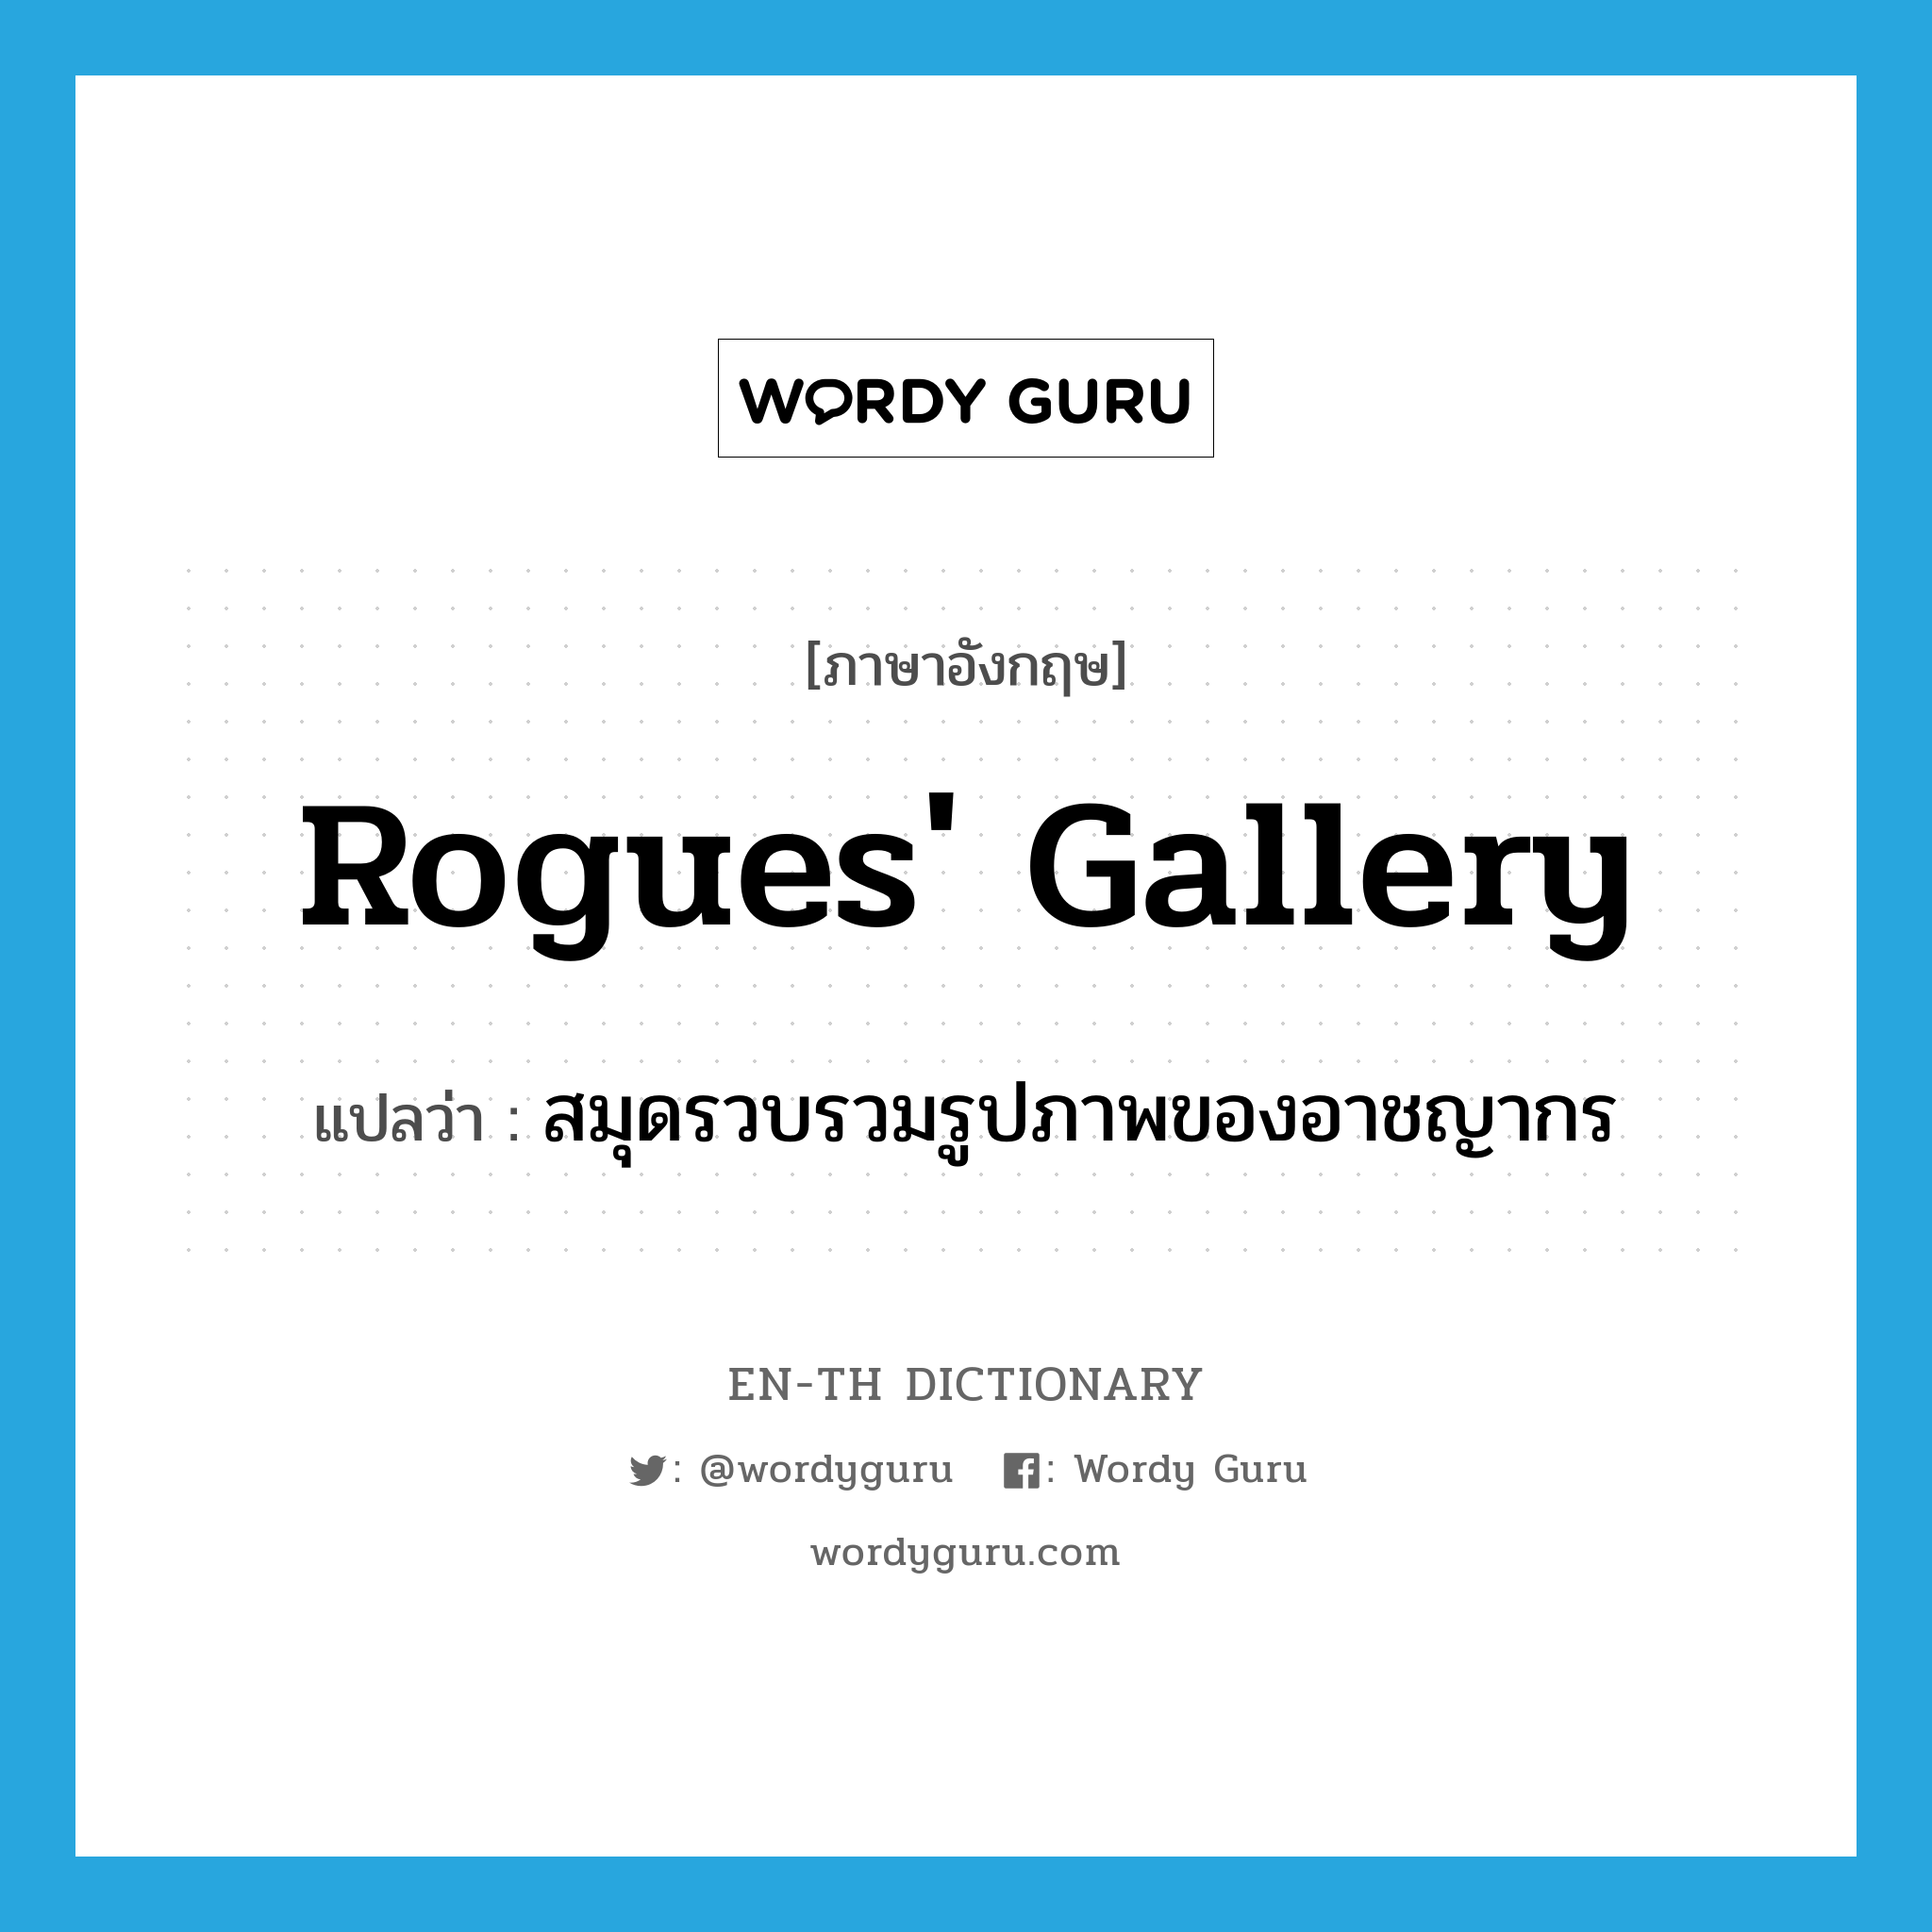 rogues' gallery แปลว่า?, คำศัพท์ภาษาอังกฤษ rogues' gallery แปลว่า สมุดรวบรวมรูปภาพของอาชญากร ประเภท N หมวด N